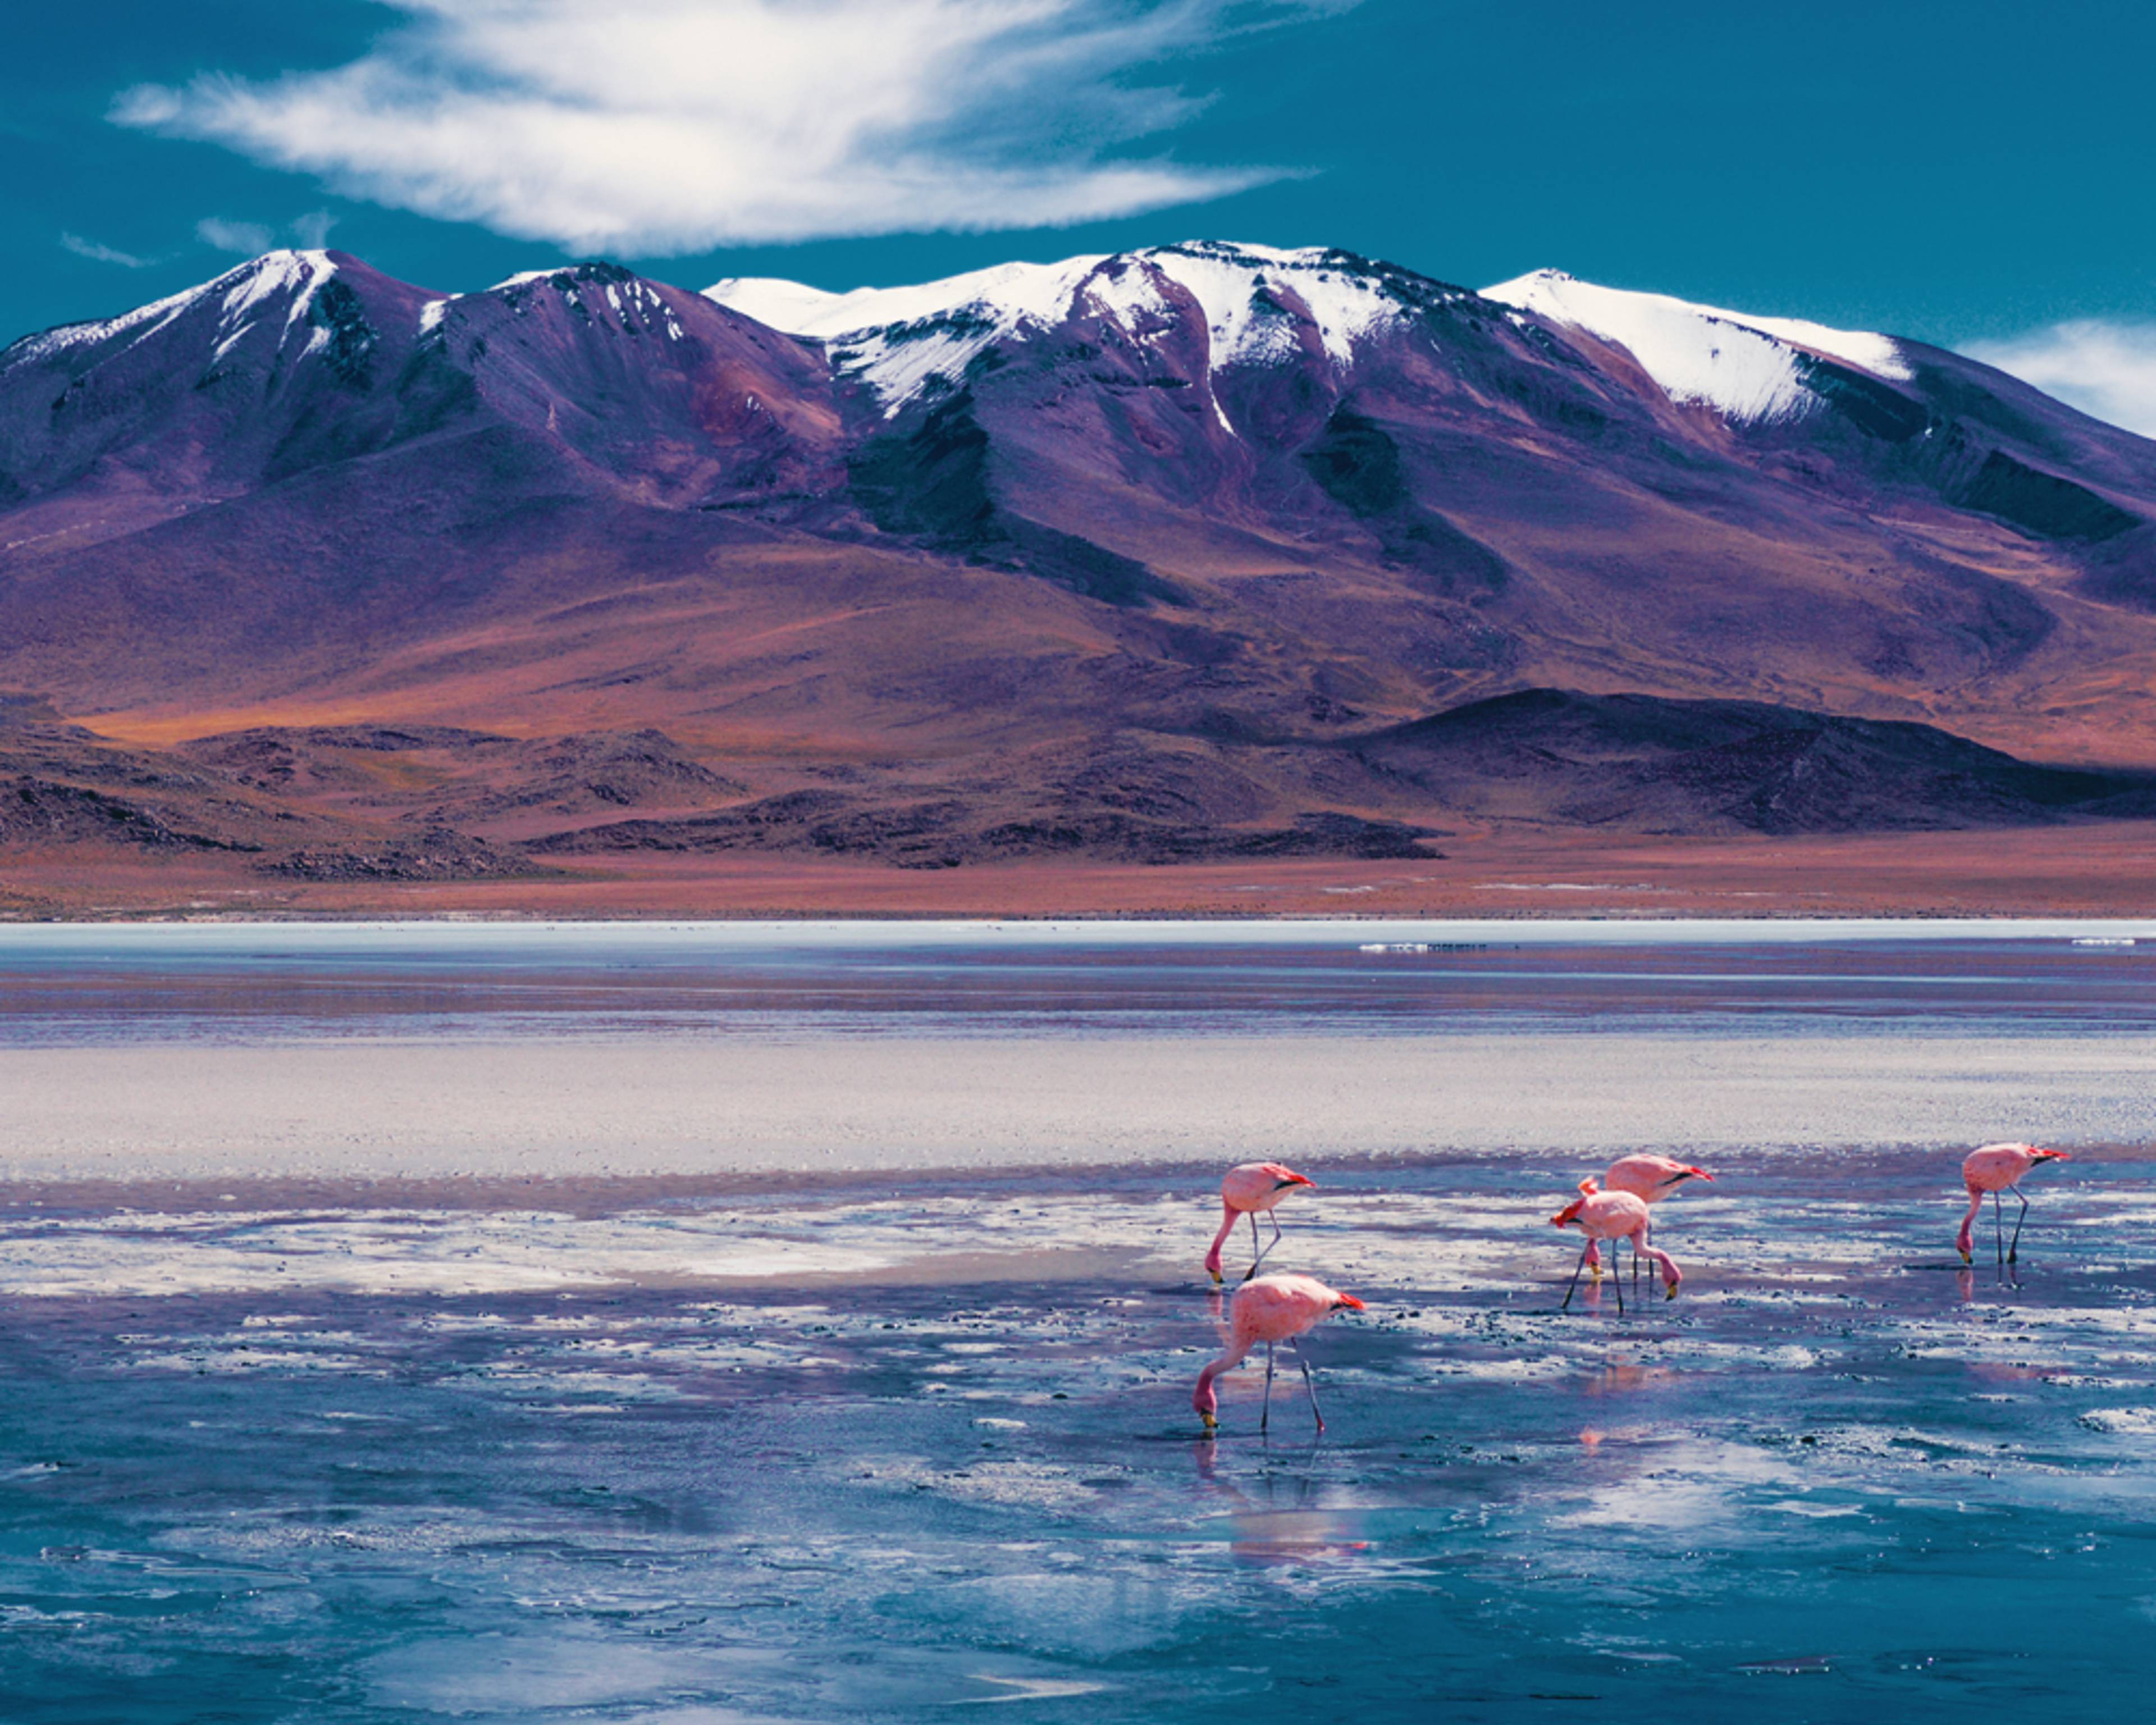 Viaggi in Bolivia in inverno - Viaggi e Tour su Misura